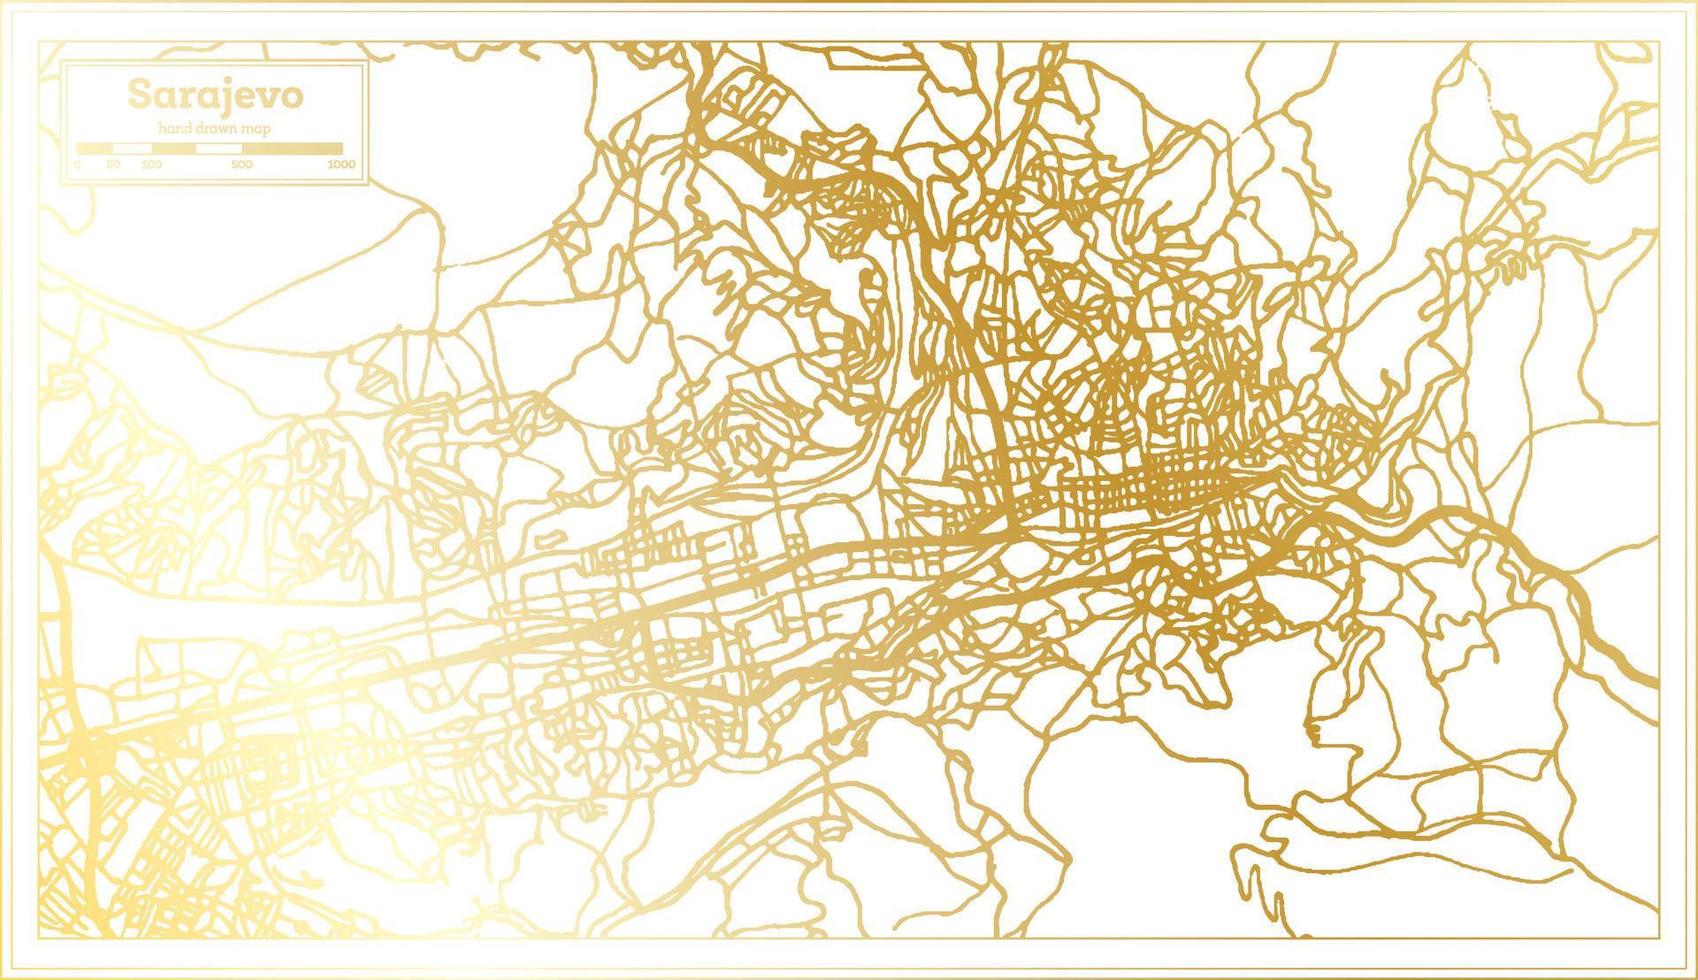 sarajevo bosnien und herzegowina stadtplan im retro-stil in goldener farbe. Übersichtskarte. vektor